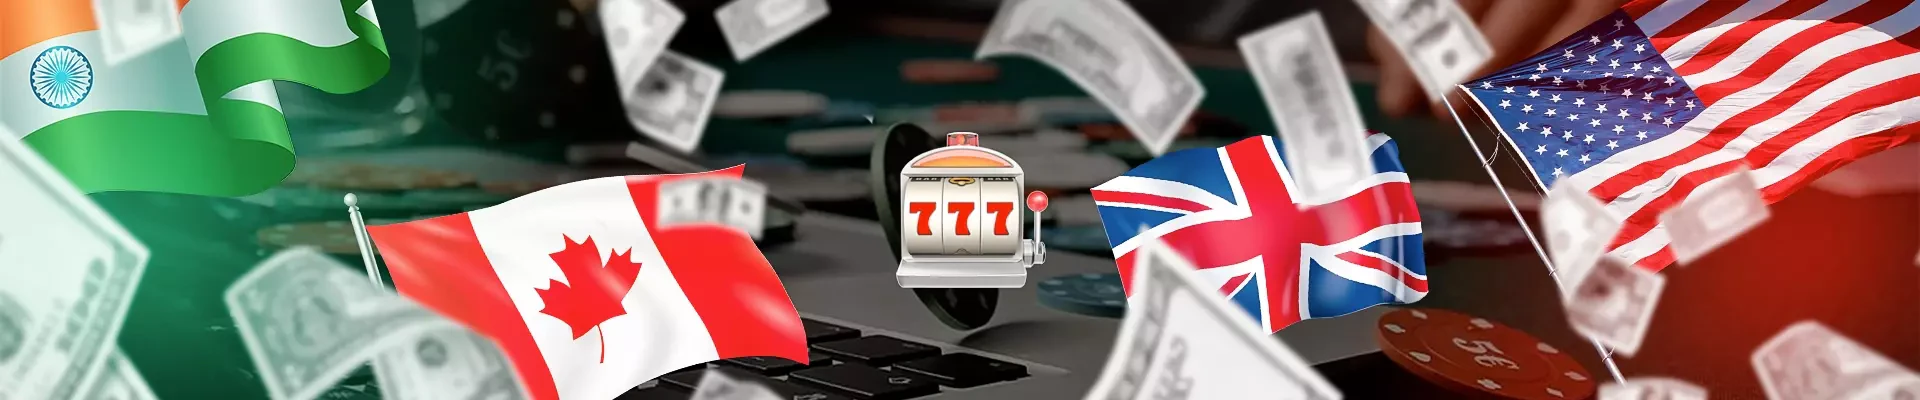 header top 5 pays passionnés par les jeux d'argent